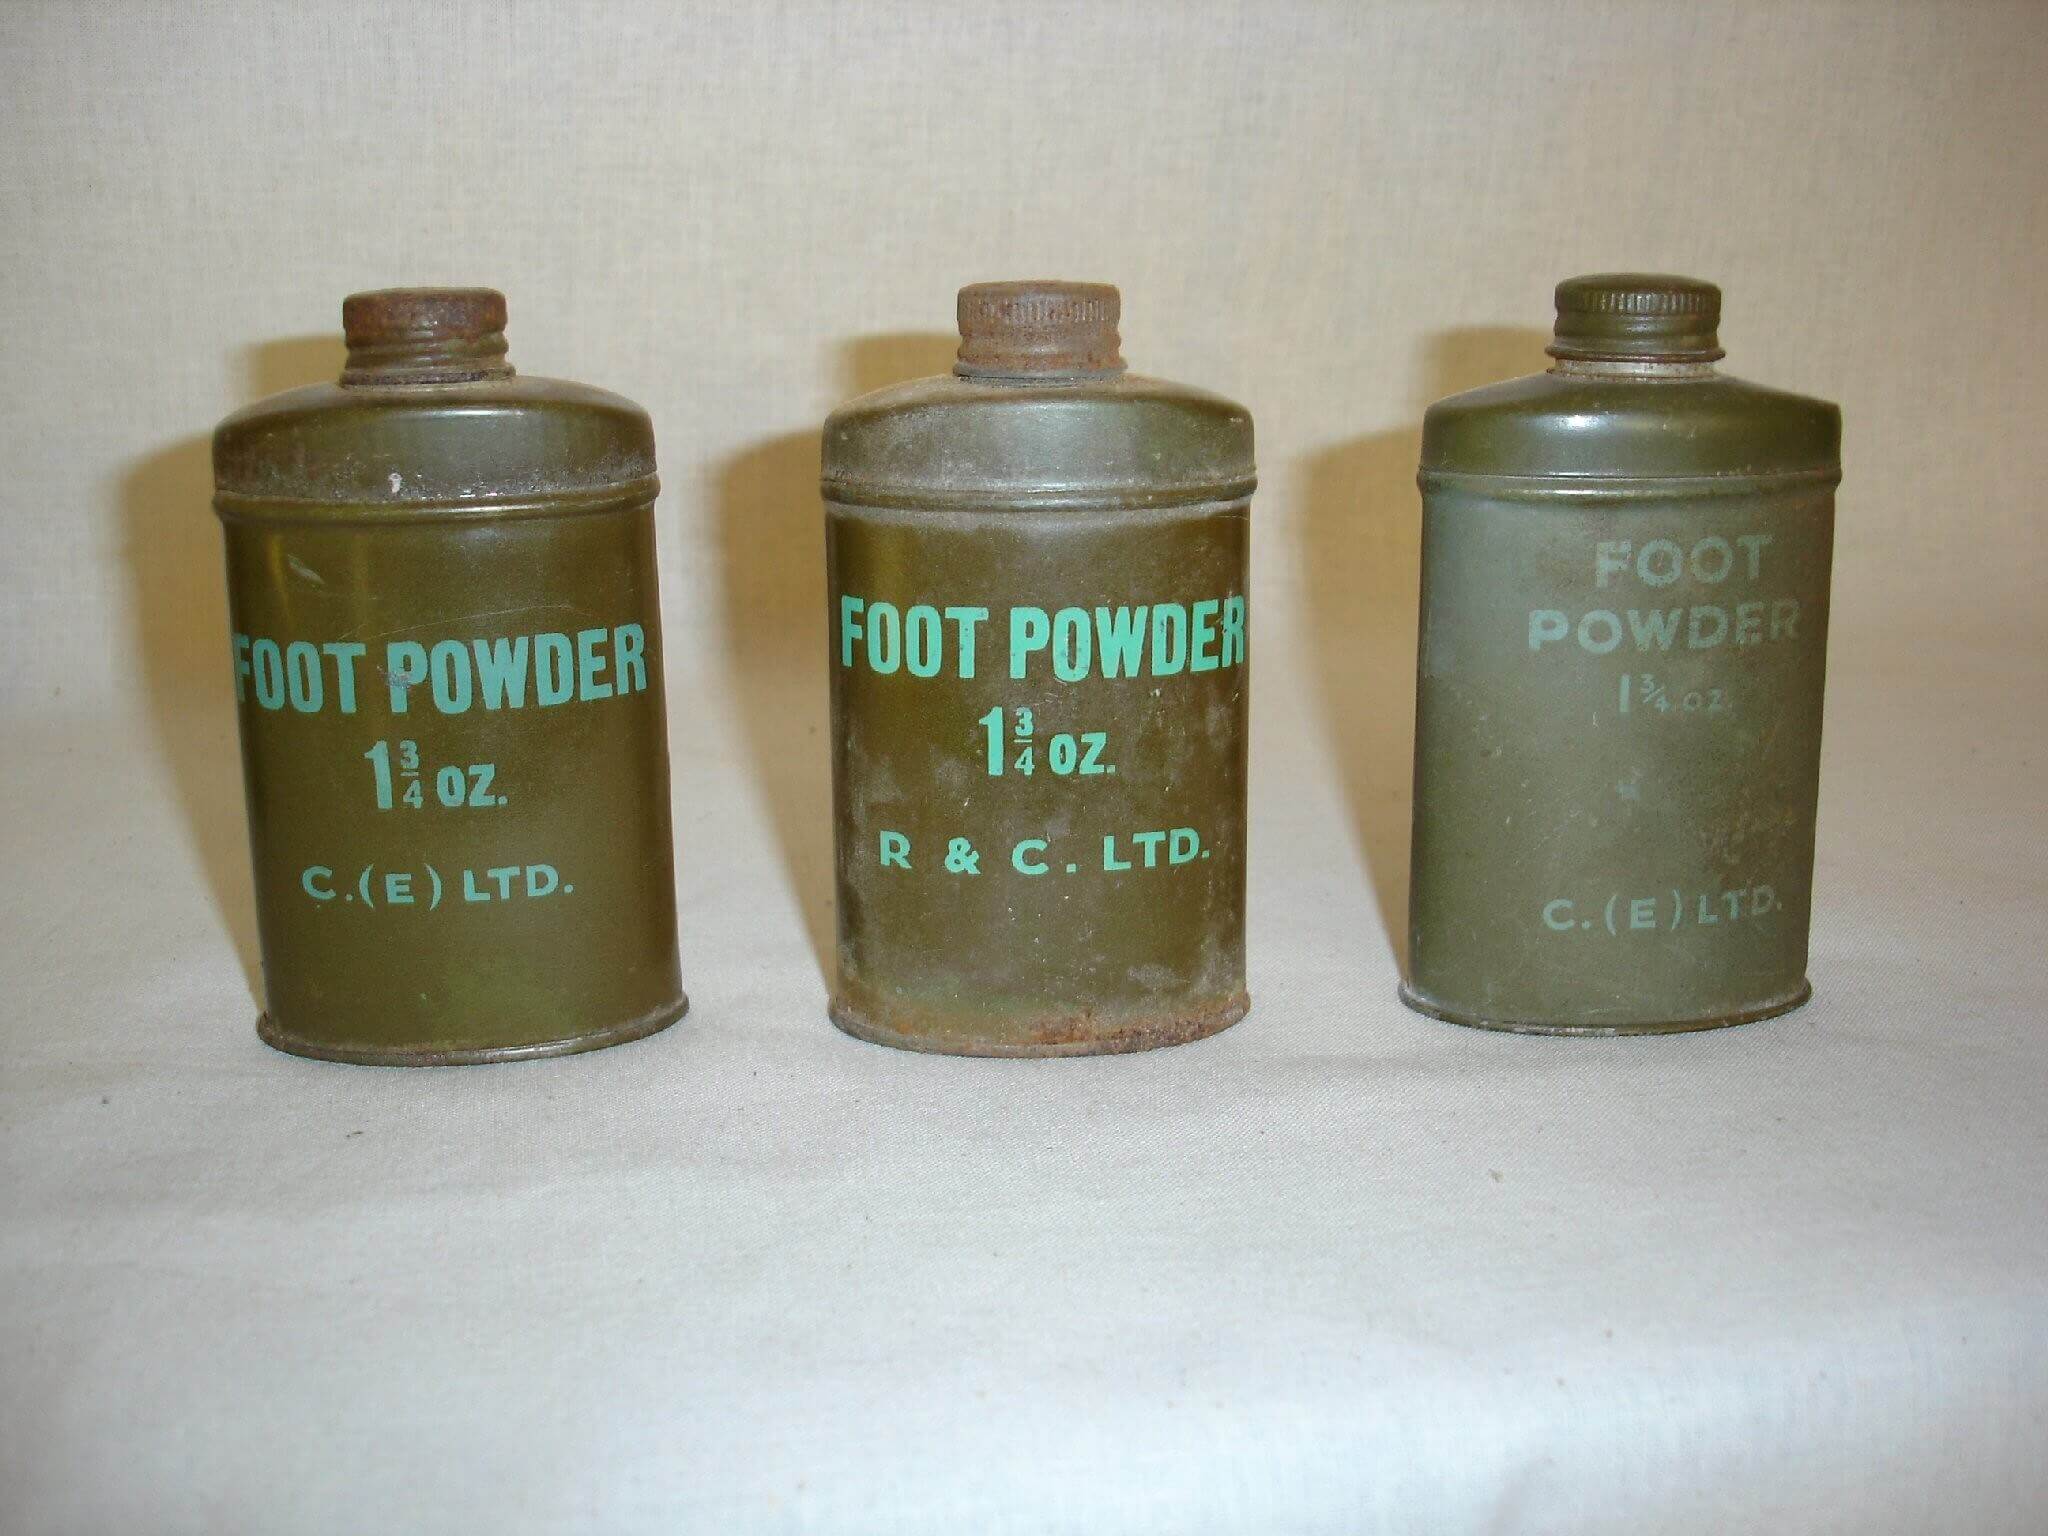 Footpowder uit de tweede wereldoorlog